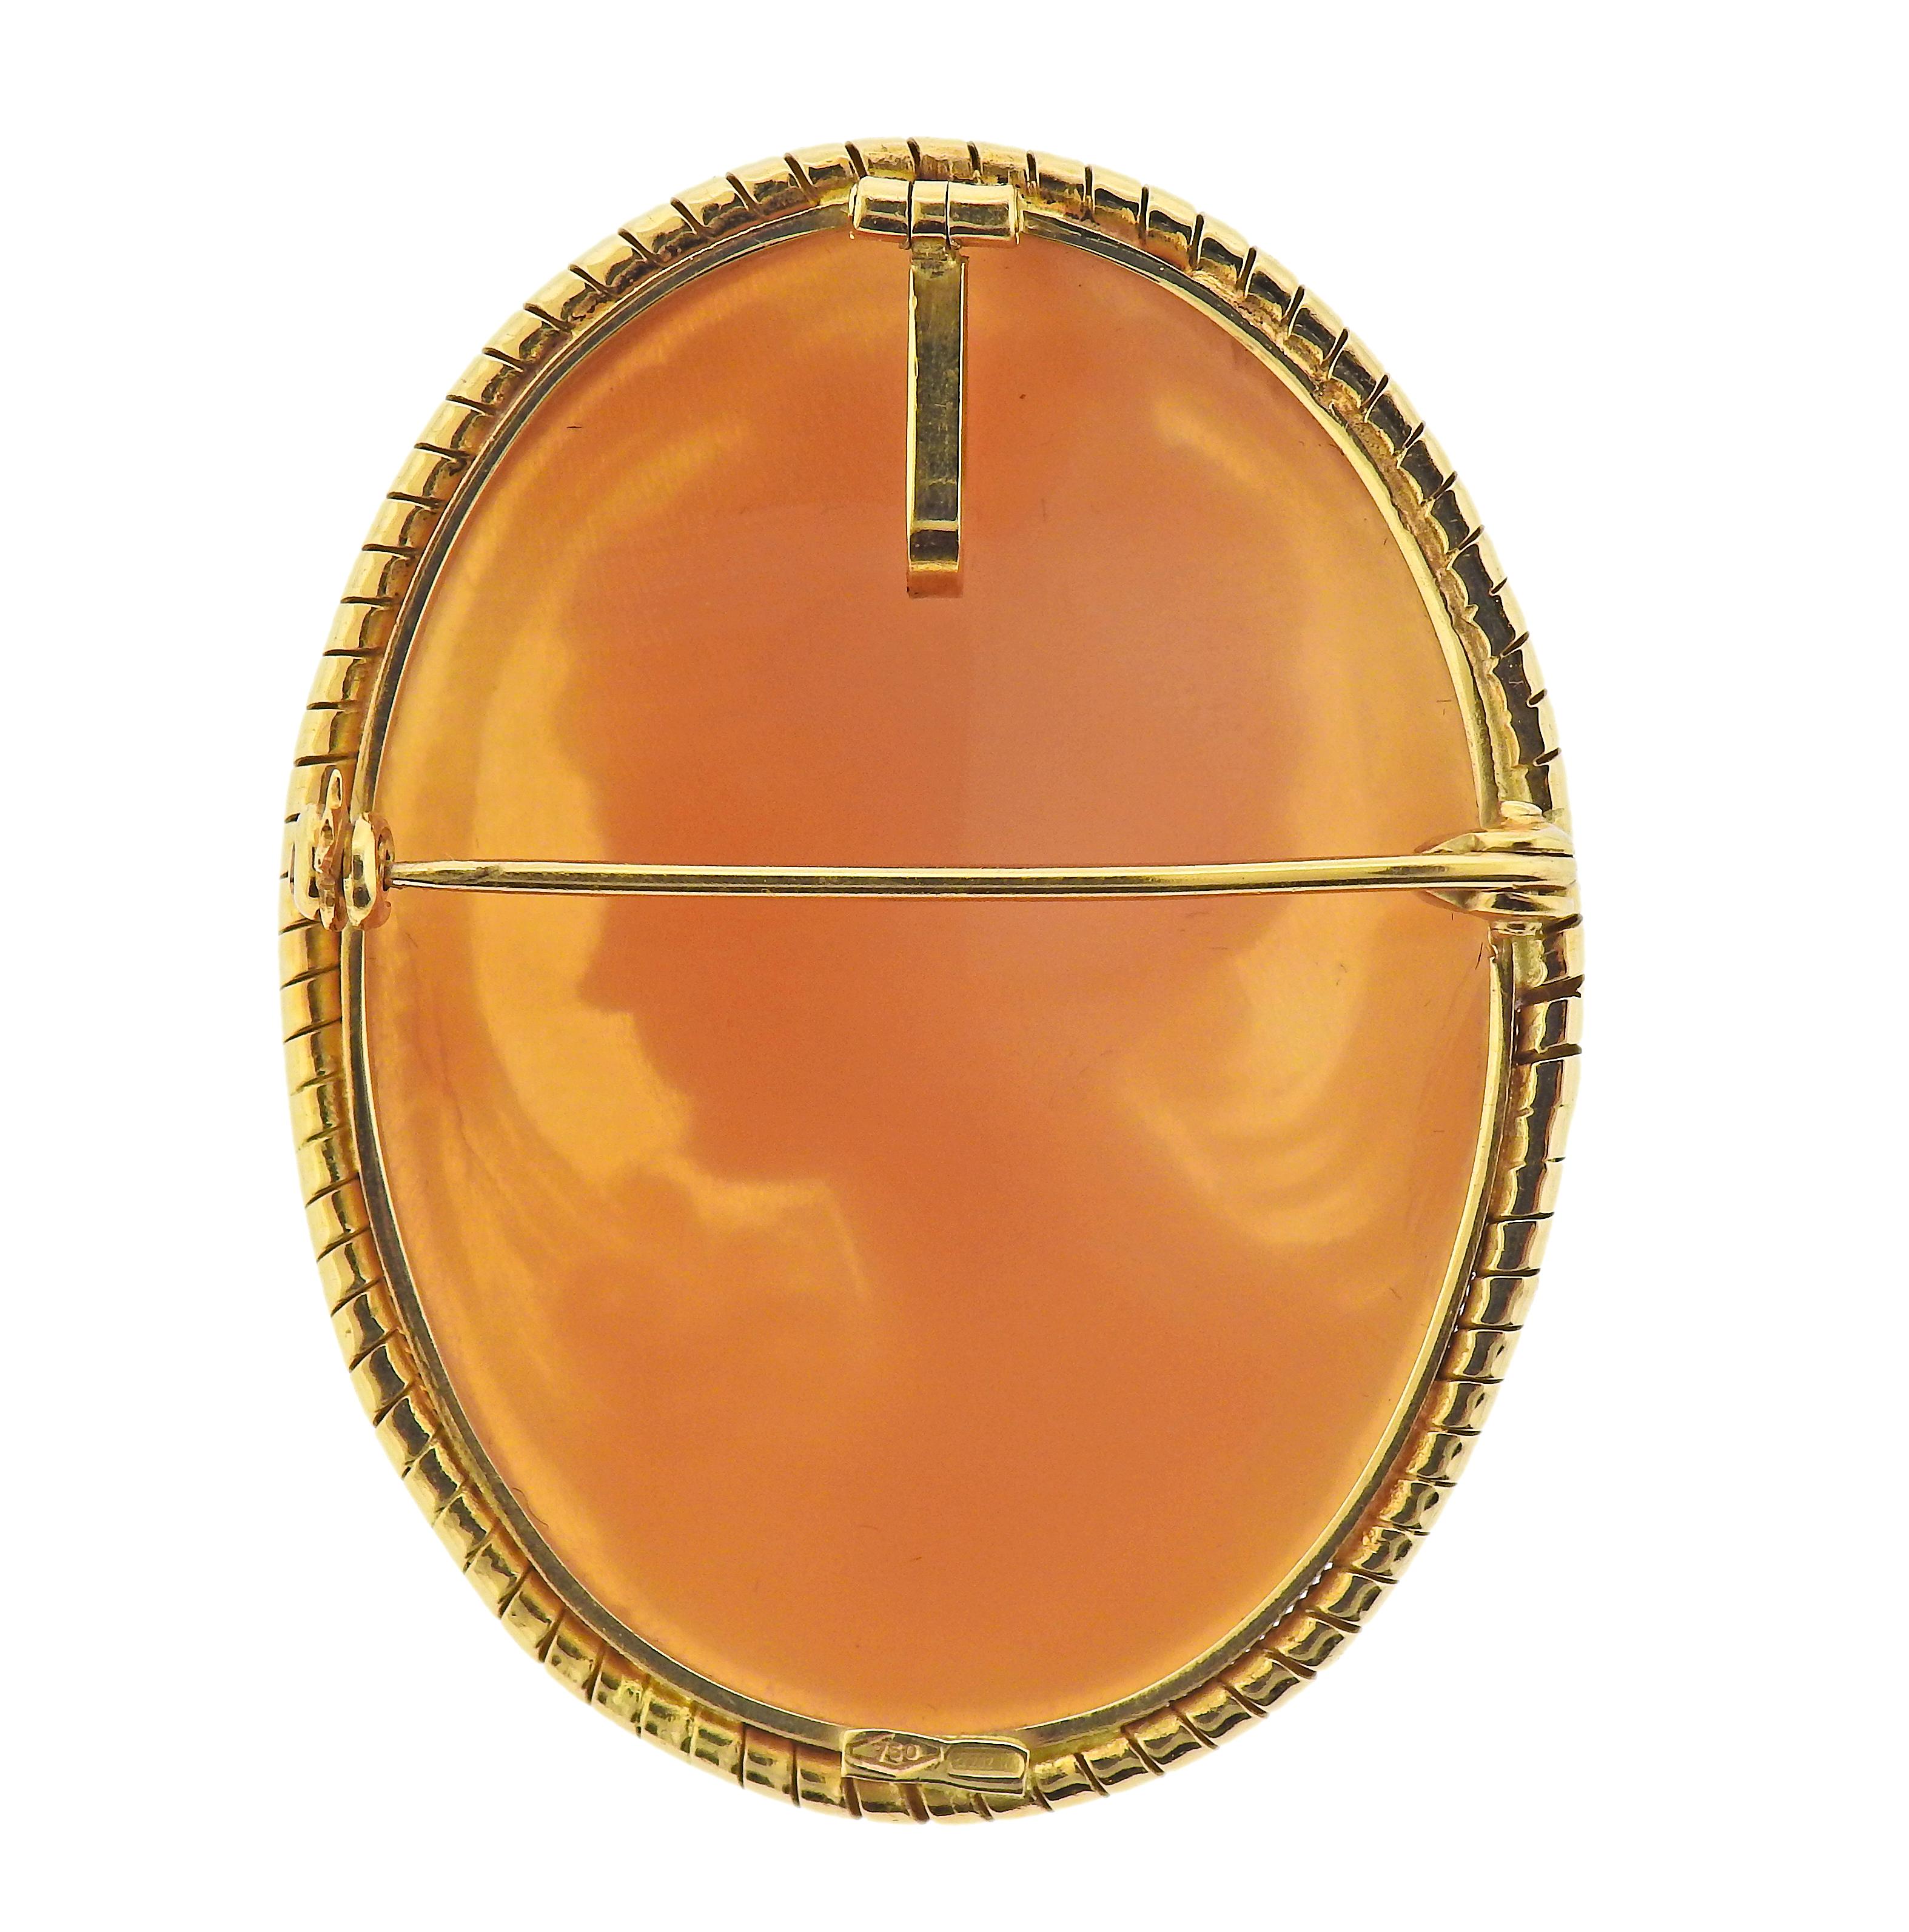 Broche pendentif en or jaune 18k, avec camée coquille, représentant le profil d'une dame. La broche mesure 45 mm x 35 mm. Marqué 750. Poids - 12 grammes. 